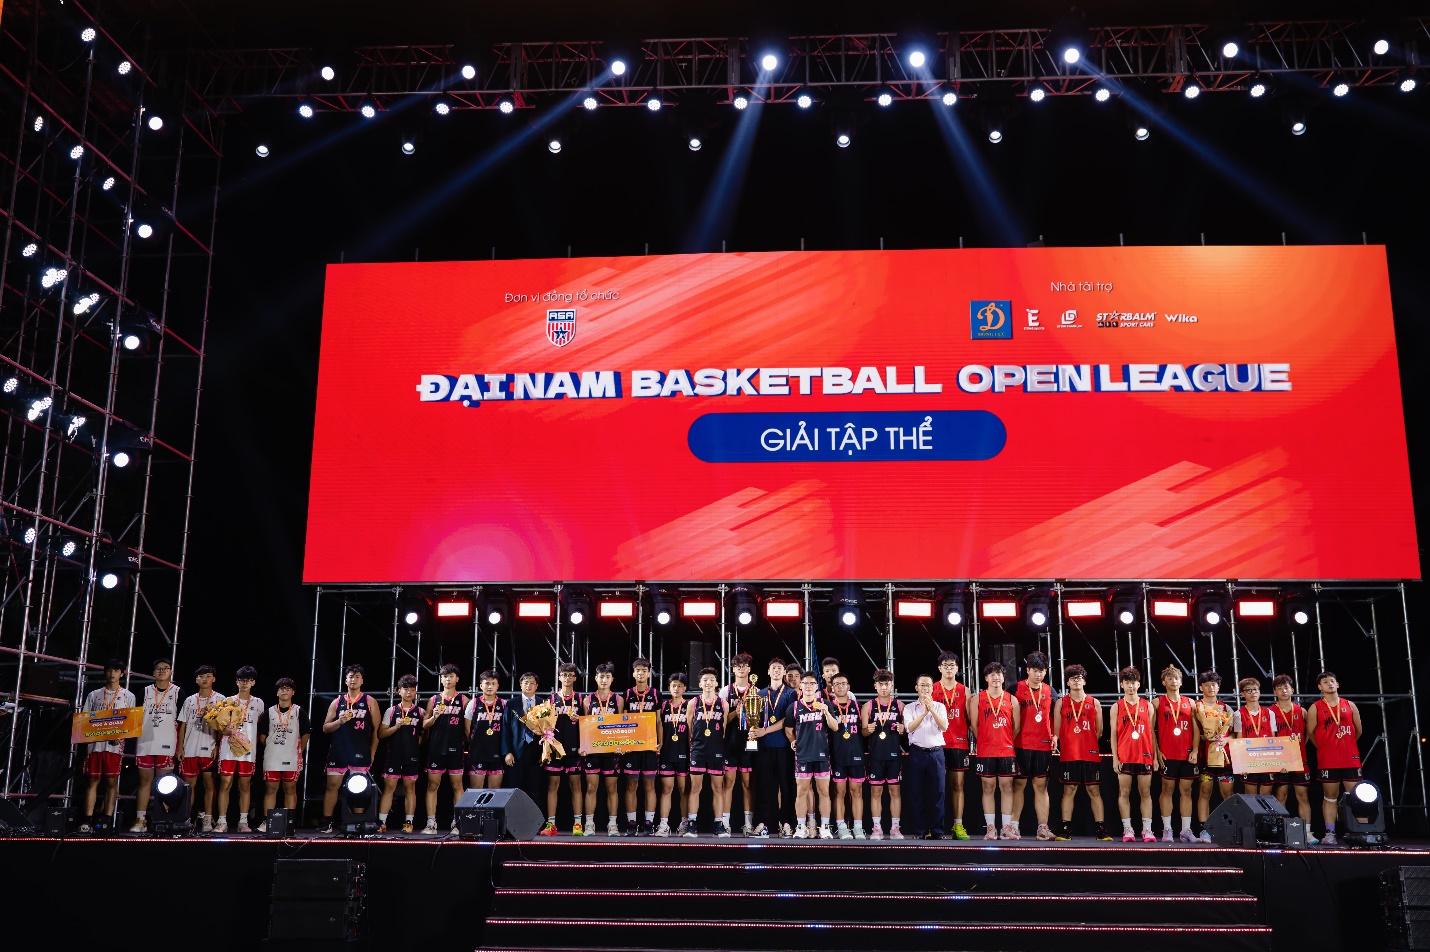 Trường THPT Nguyễn Bỉnh Khiêm chính thức trở thành nhà vô địch giải bóng rổ Đại Nam Open Basketball League. Giải Nhì được trao cho trường THPT Phan Đình Phùng và giải ba thuộc về trường THPT Khoa học giáo dục.